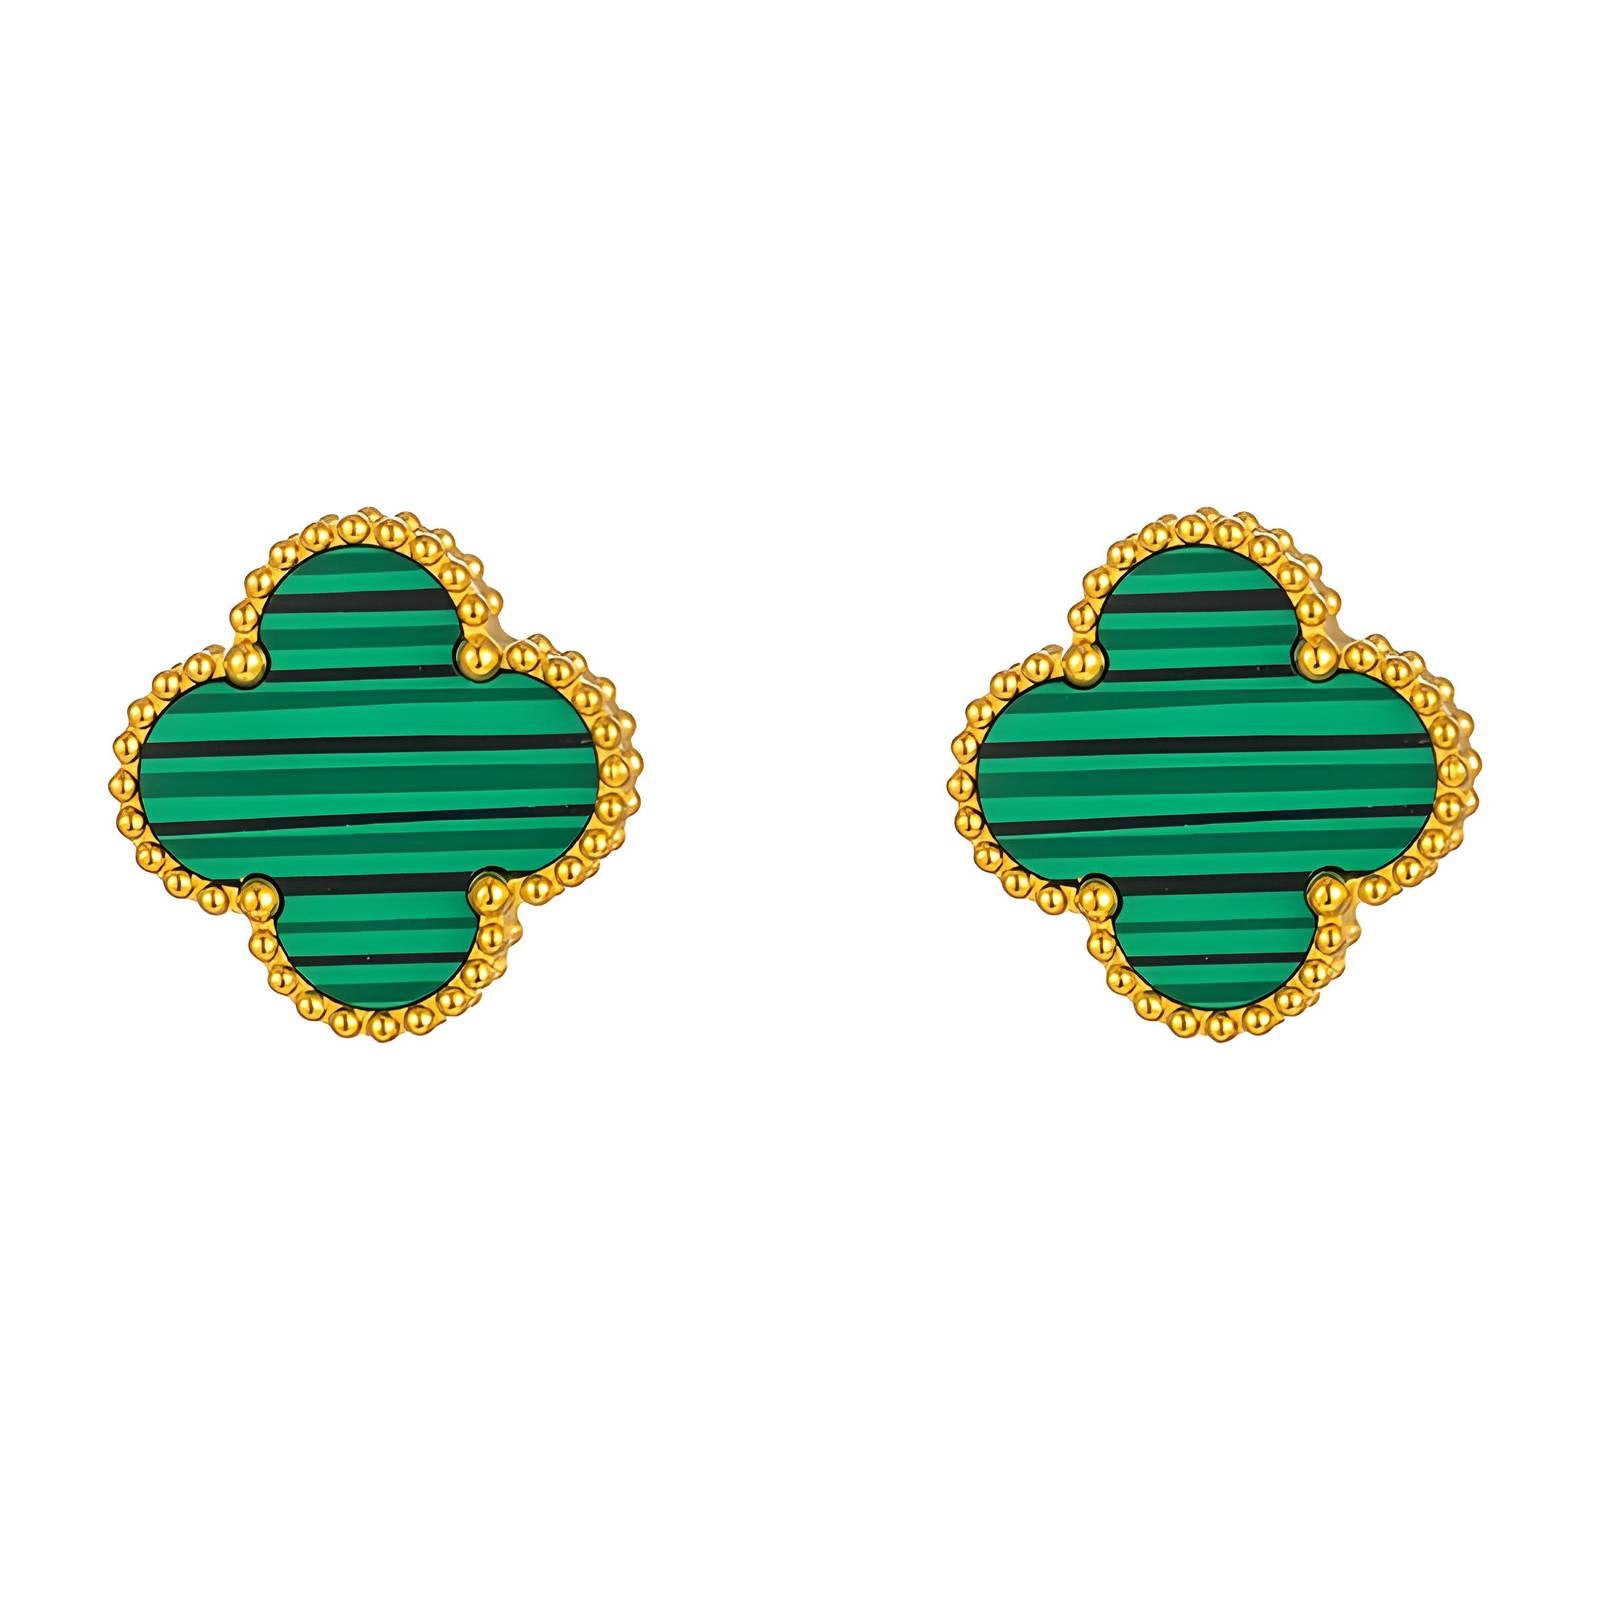 Four-leaf clover earrings - SAOROPHO